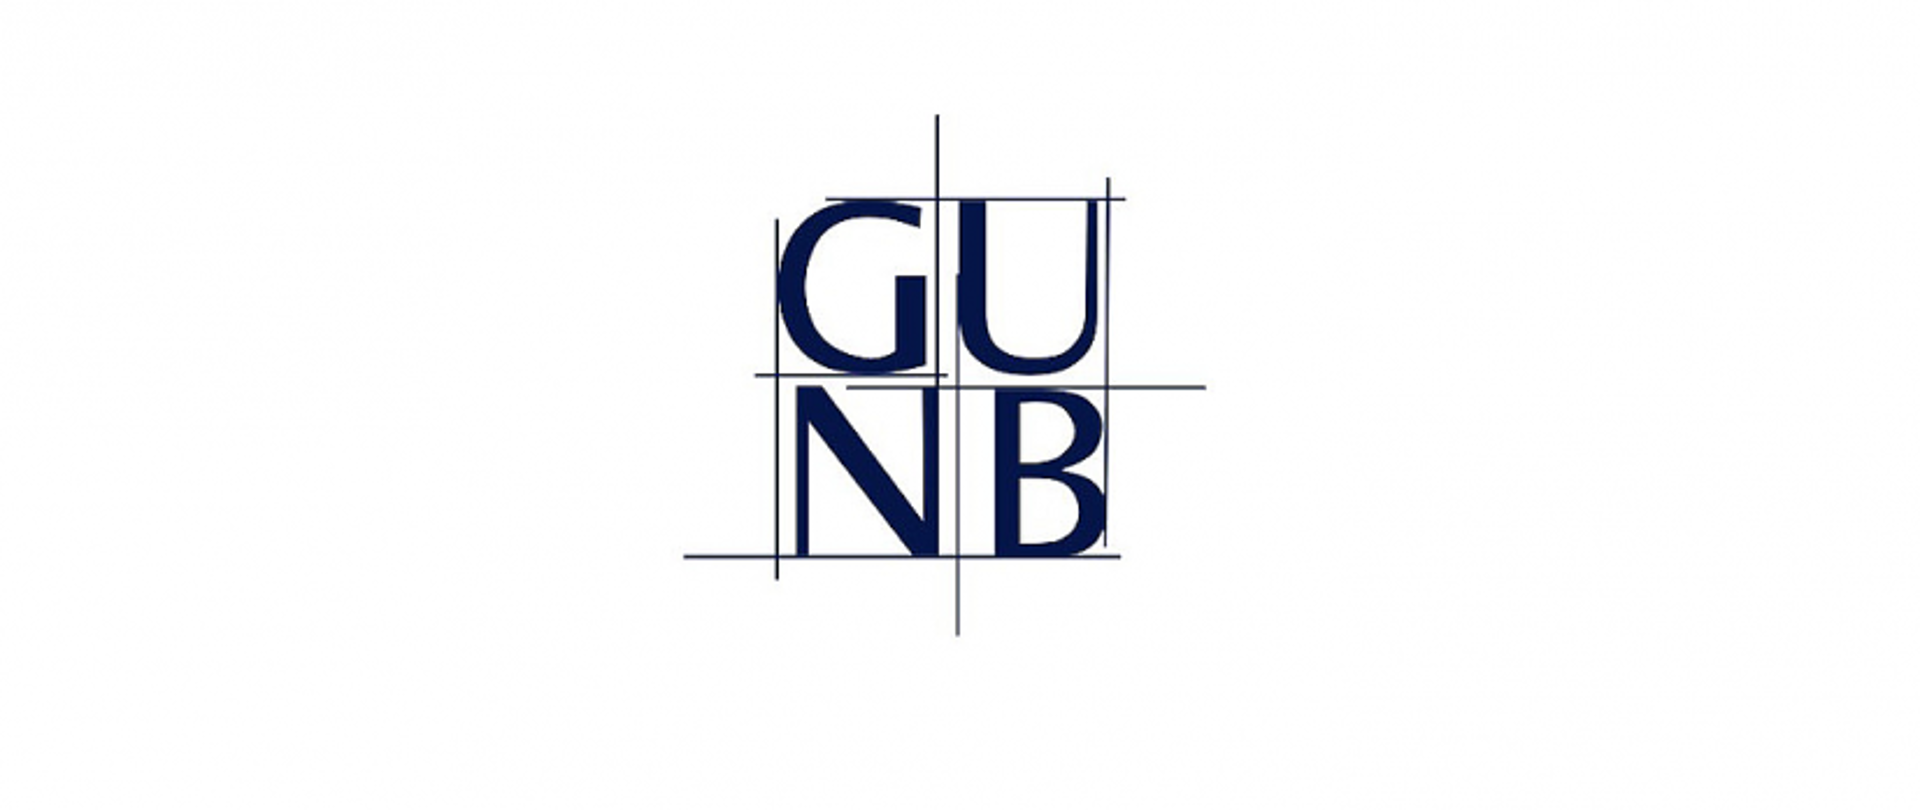 Logo Głównego Urzędu Nadzoru Budowlanego. Litery GUNB w dwóch rzędach (GU i NB) w kolorze niebiskim na białym tle. Pomiędzy nimi pionowe i poziome linie